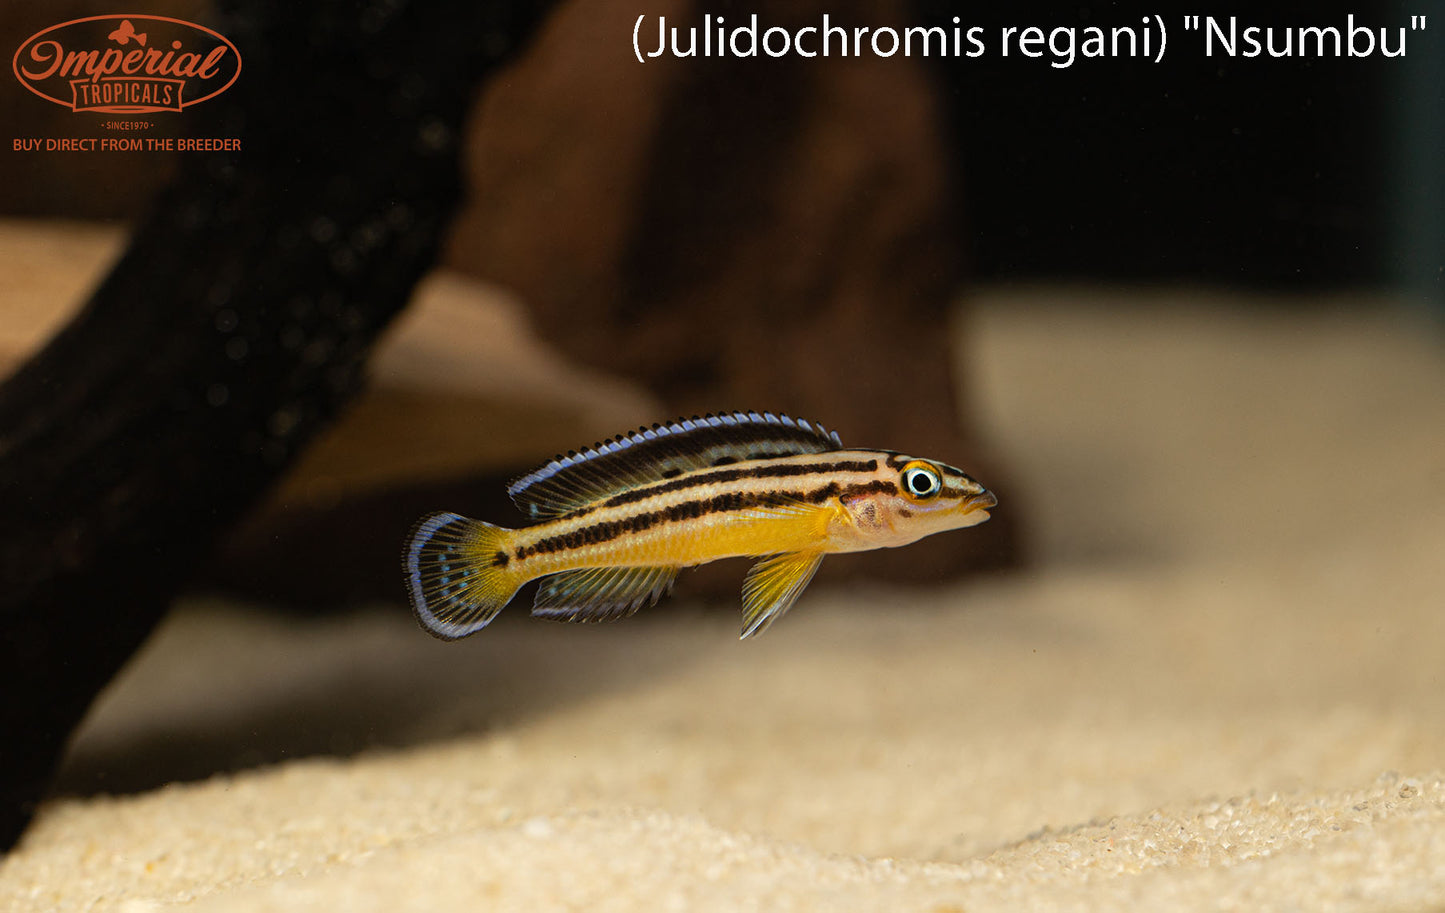 Julidochromis regani "Nsumbu"